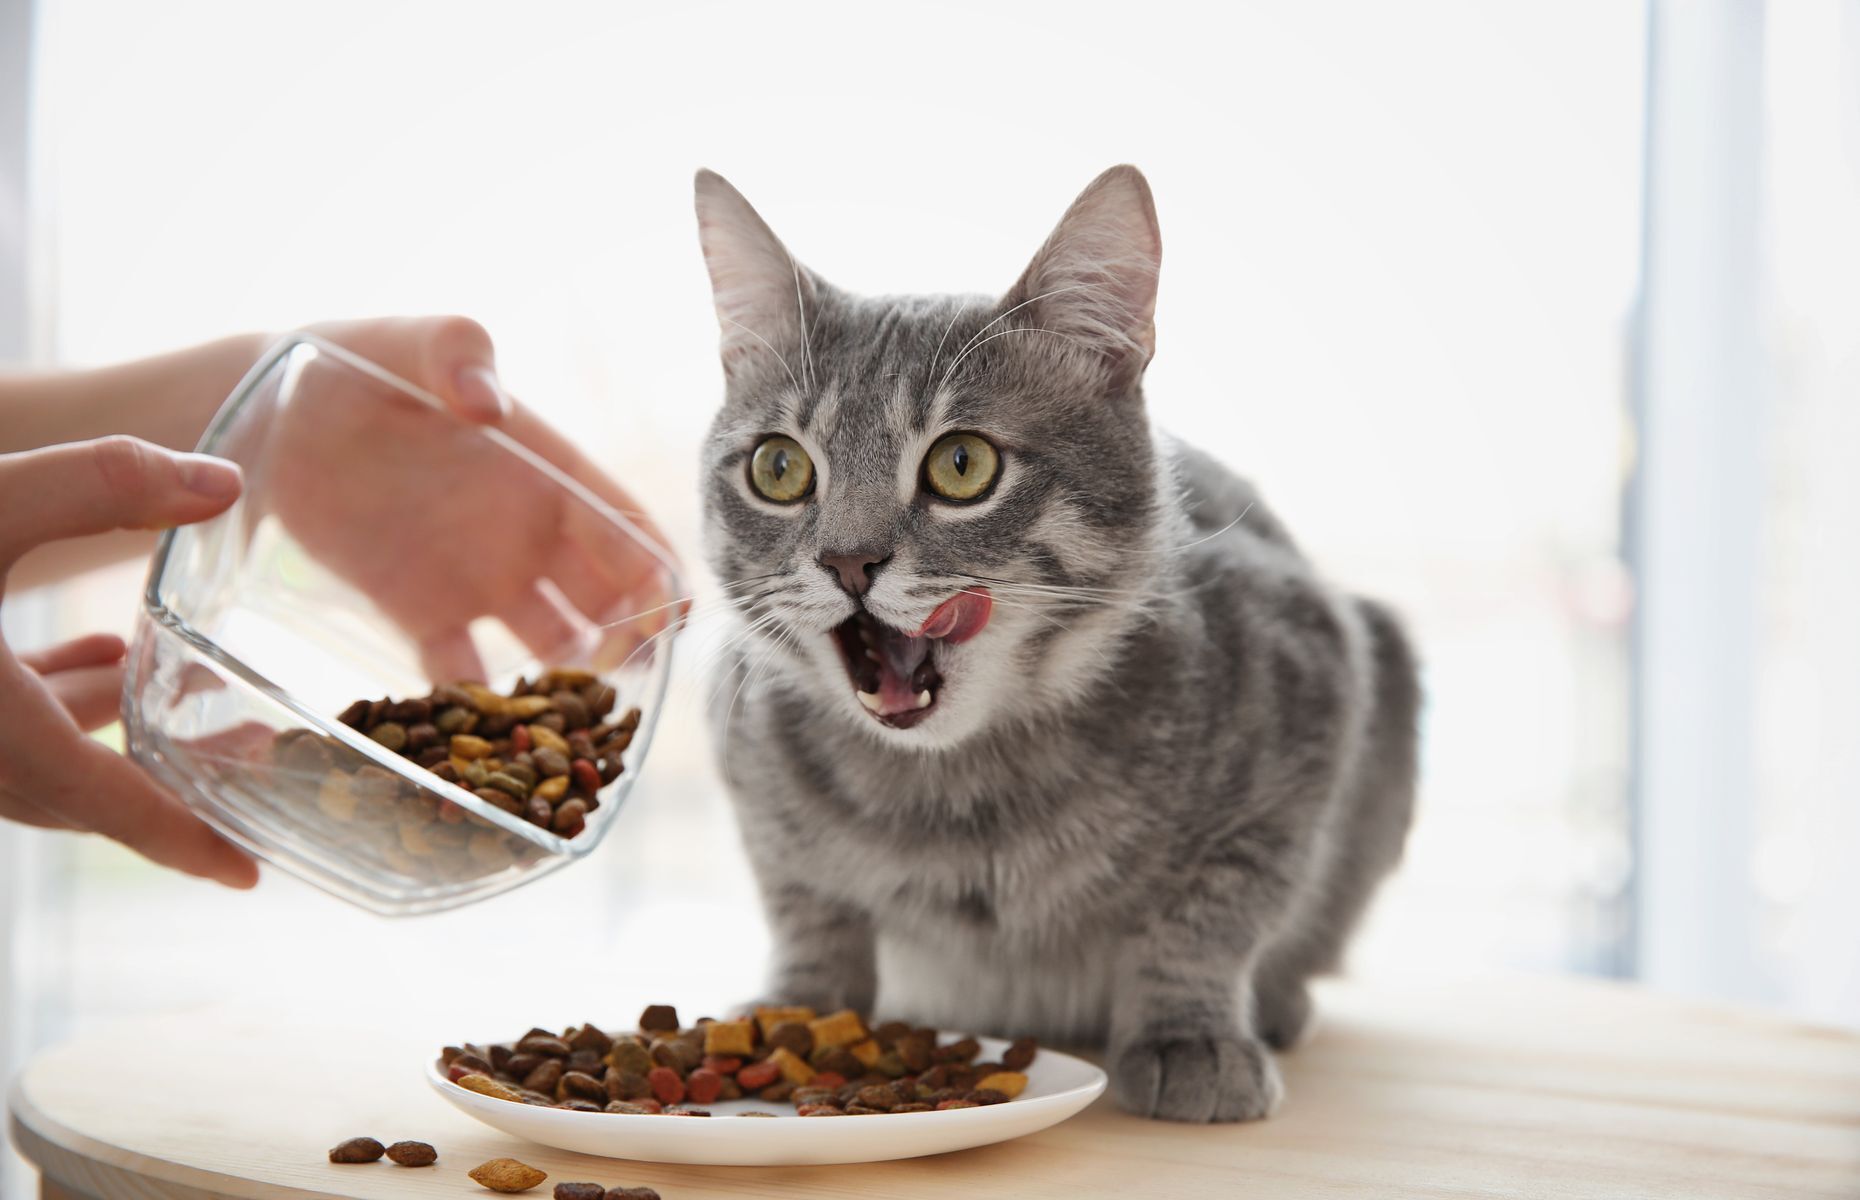 <p>Si vous êtes du genre à garder le bol de votre chat plein ou à le nourrir dès qu’il miaule, sachez que ce n’est pas la meilleure chose à faire pour garder votre compagnon en santé. <a href="https://www.lapresse.ca/societe/animaux/2020-09-23/nourrir-un-chat-une-fois-par-jour-serait-ideal.php">La plupart des chats gagnent à ne manger qu’un seul repas par jour</a>, ou alors à revenir grignoter dans le bol quand ils ont faim. Ne servez que la quantité recommandée sur le sac de nourriture ou par votre vétérinaire, et n’oubliez pas que les gâteries comptent dans l’apport calorique.</p>